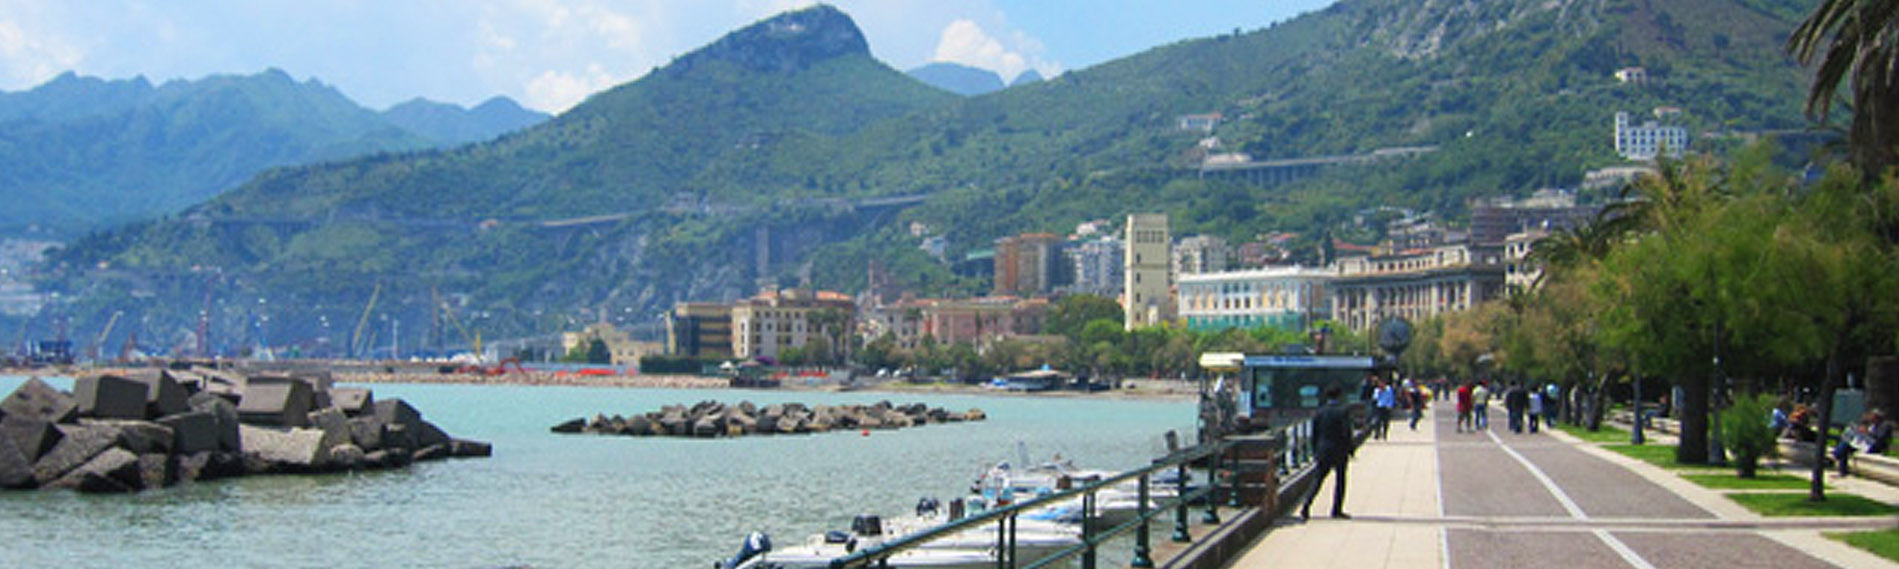 Italia de norte a sur: Salerno